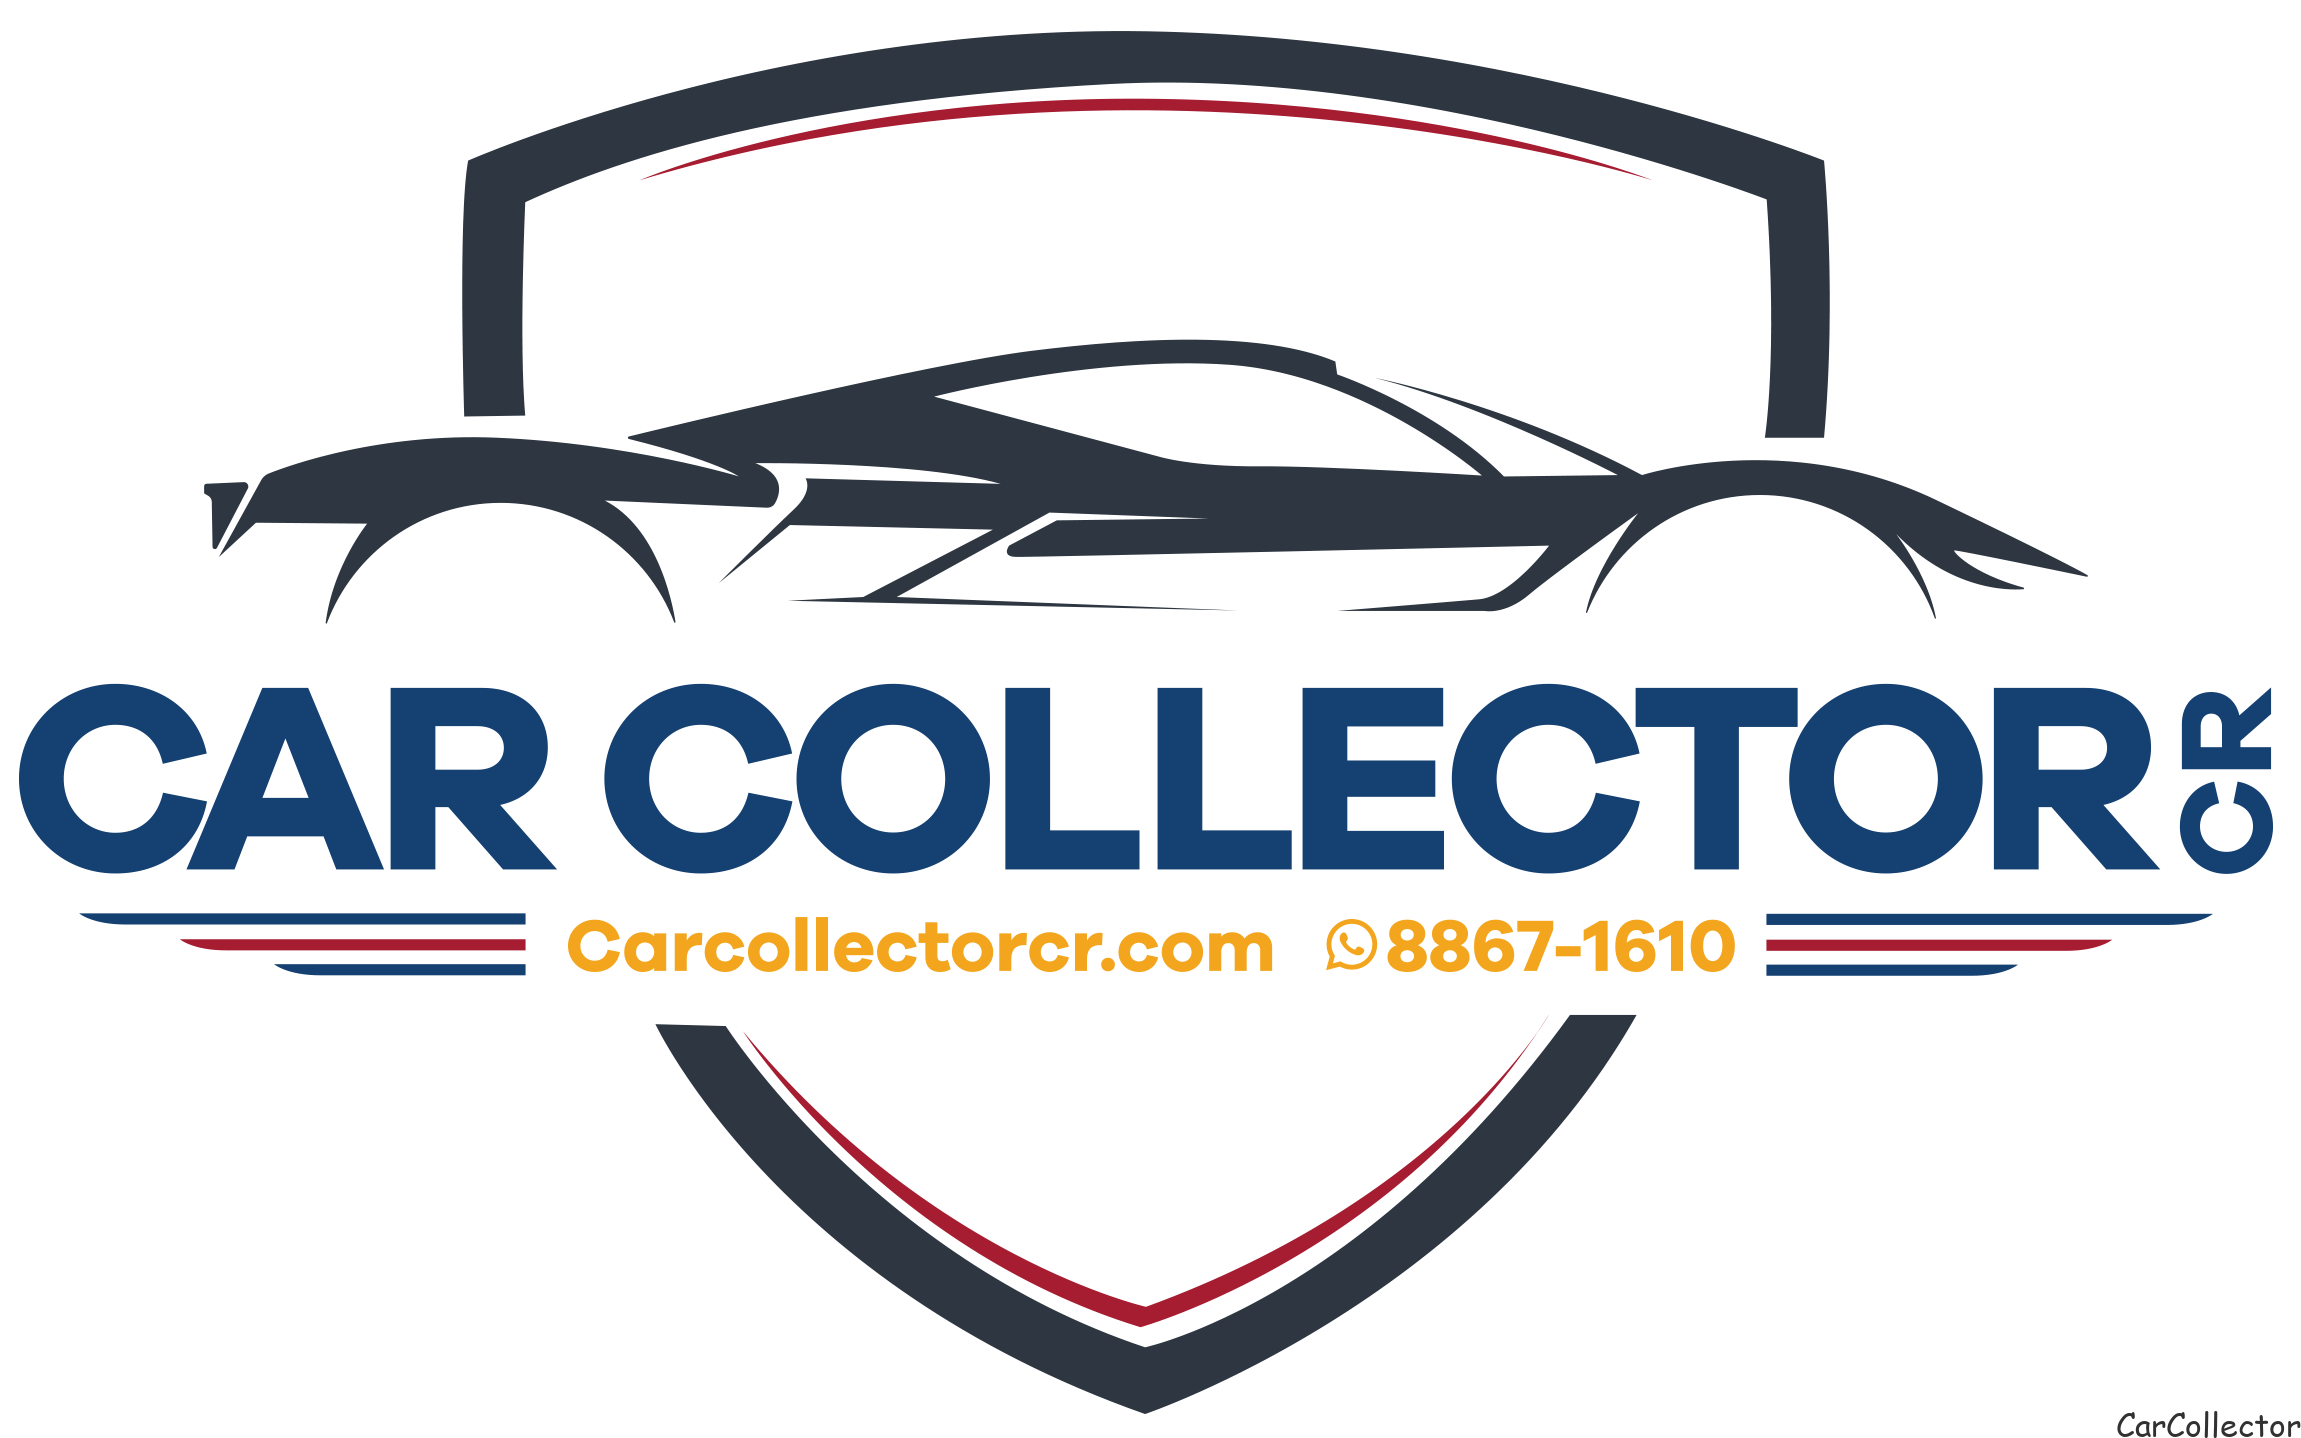 Car Collector Costa Rica